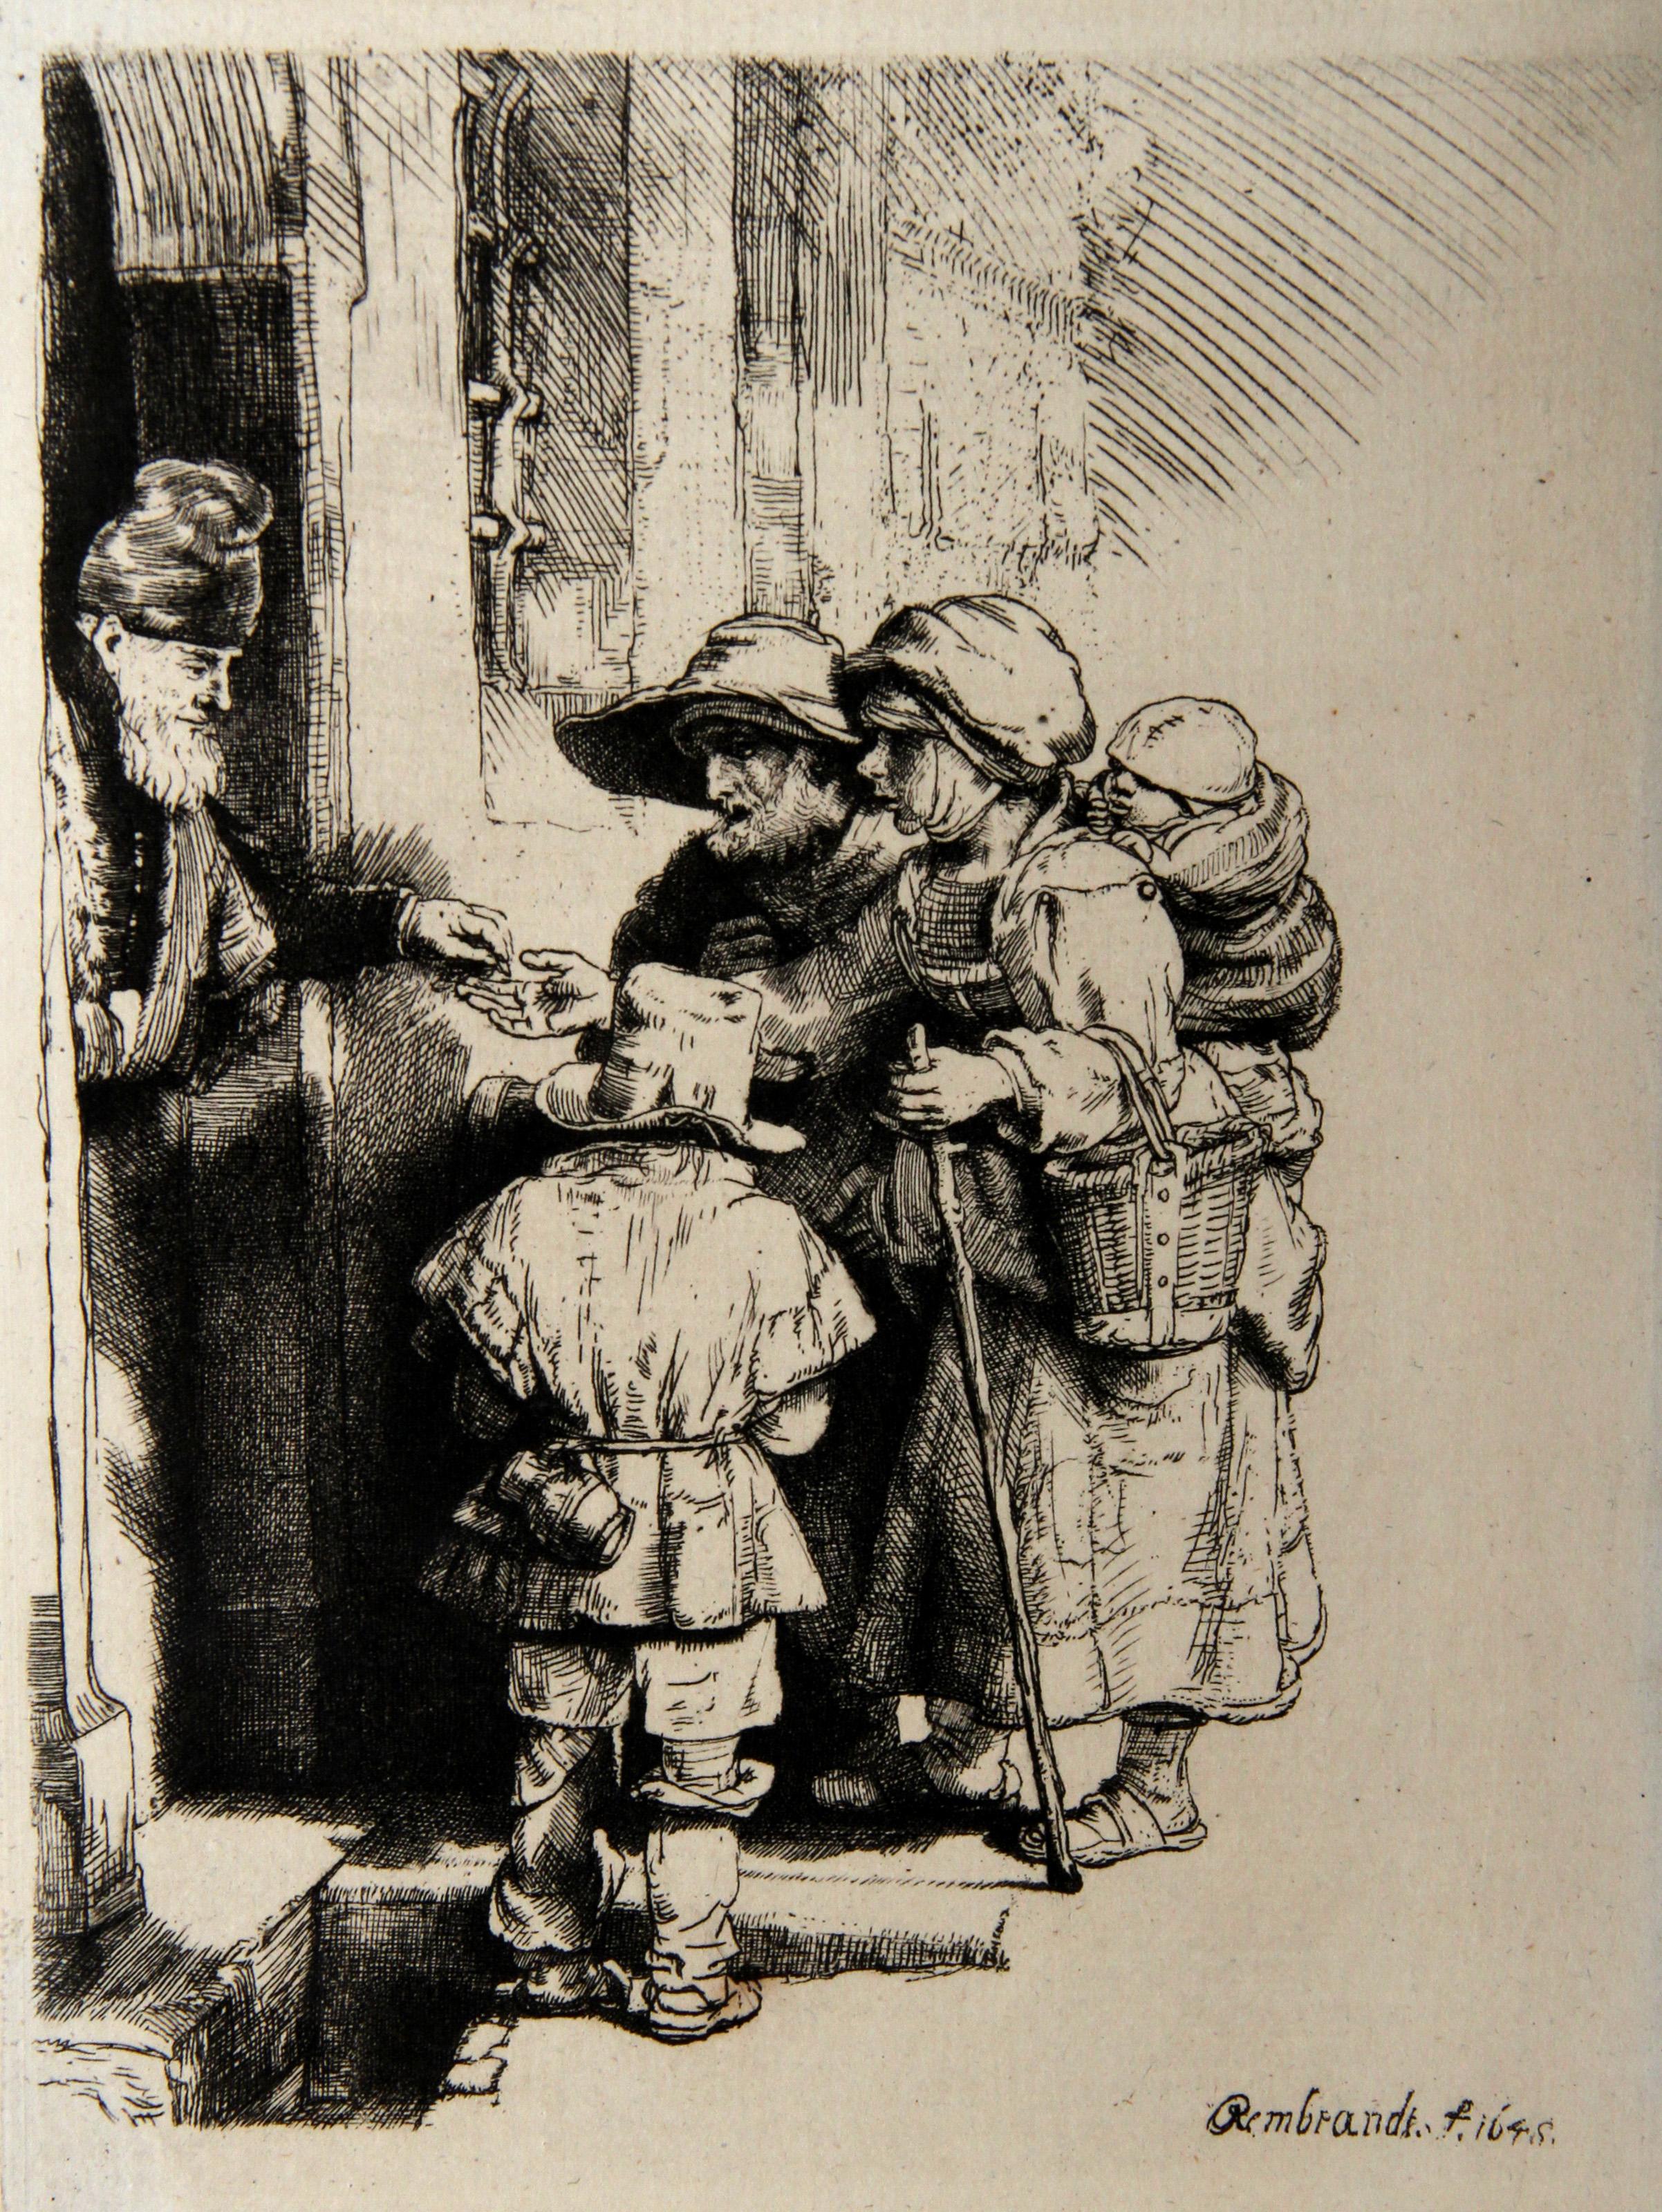 Rembrandt van Rijn, After by Amand Durand, Dutch (1606 - 1669) -  Mendients a la Porte d'Une Maison (B176). Year: 1878 (of original 1648), Medium: Heliogravure, Size: 7  x 5.5 in. (17.78  x 13.97 cm), Printer: Amand Durand, Description: French